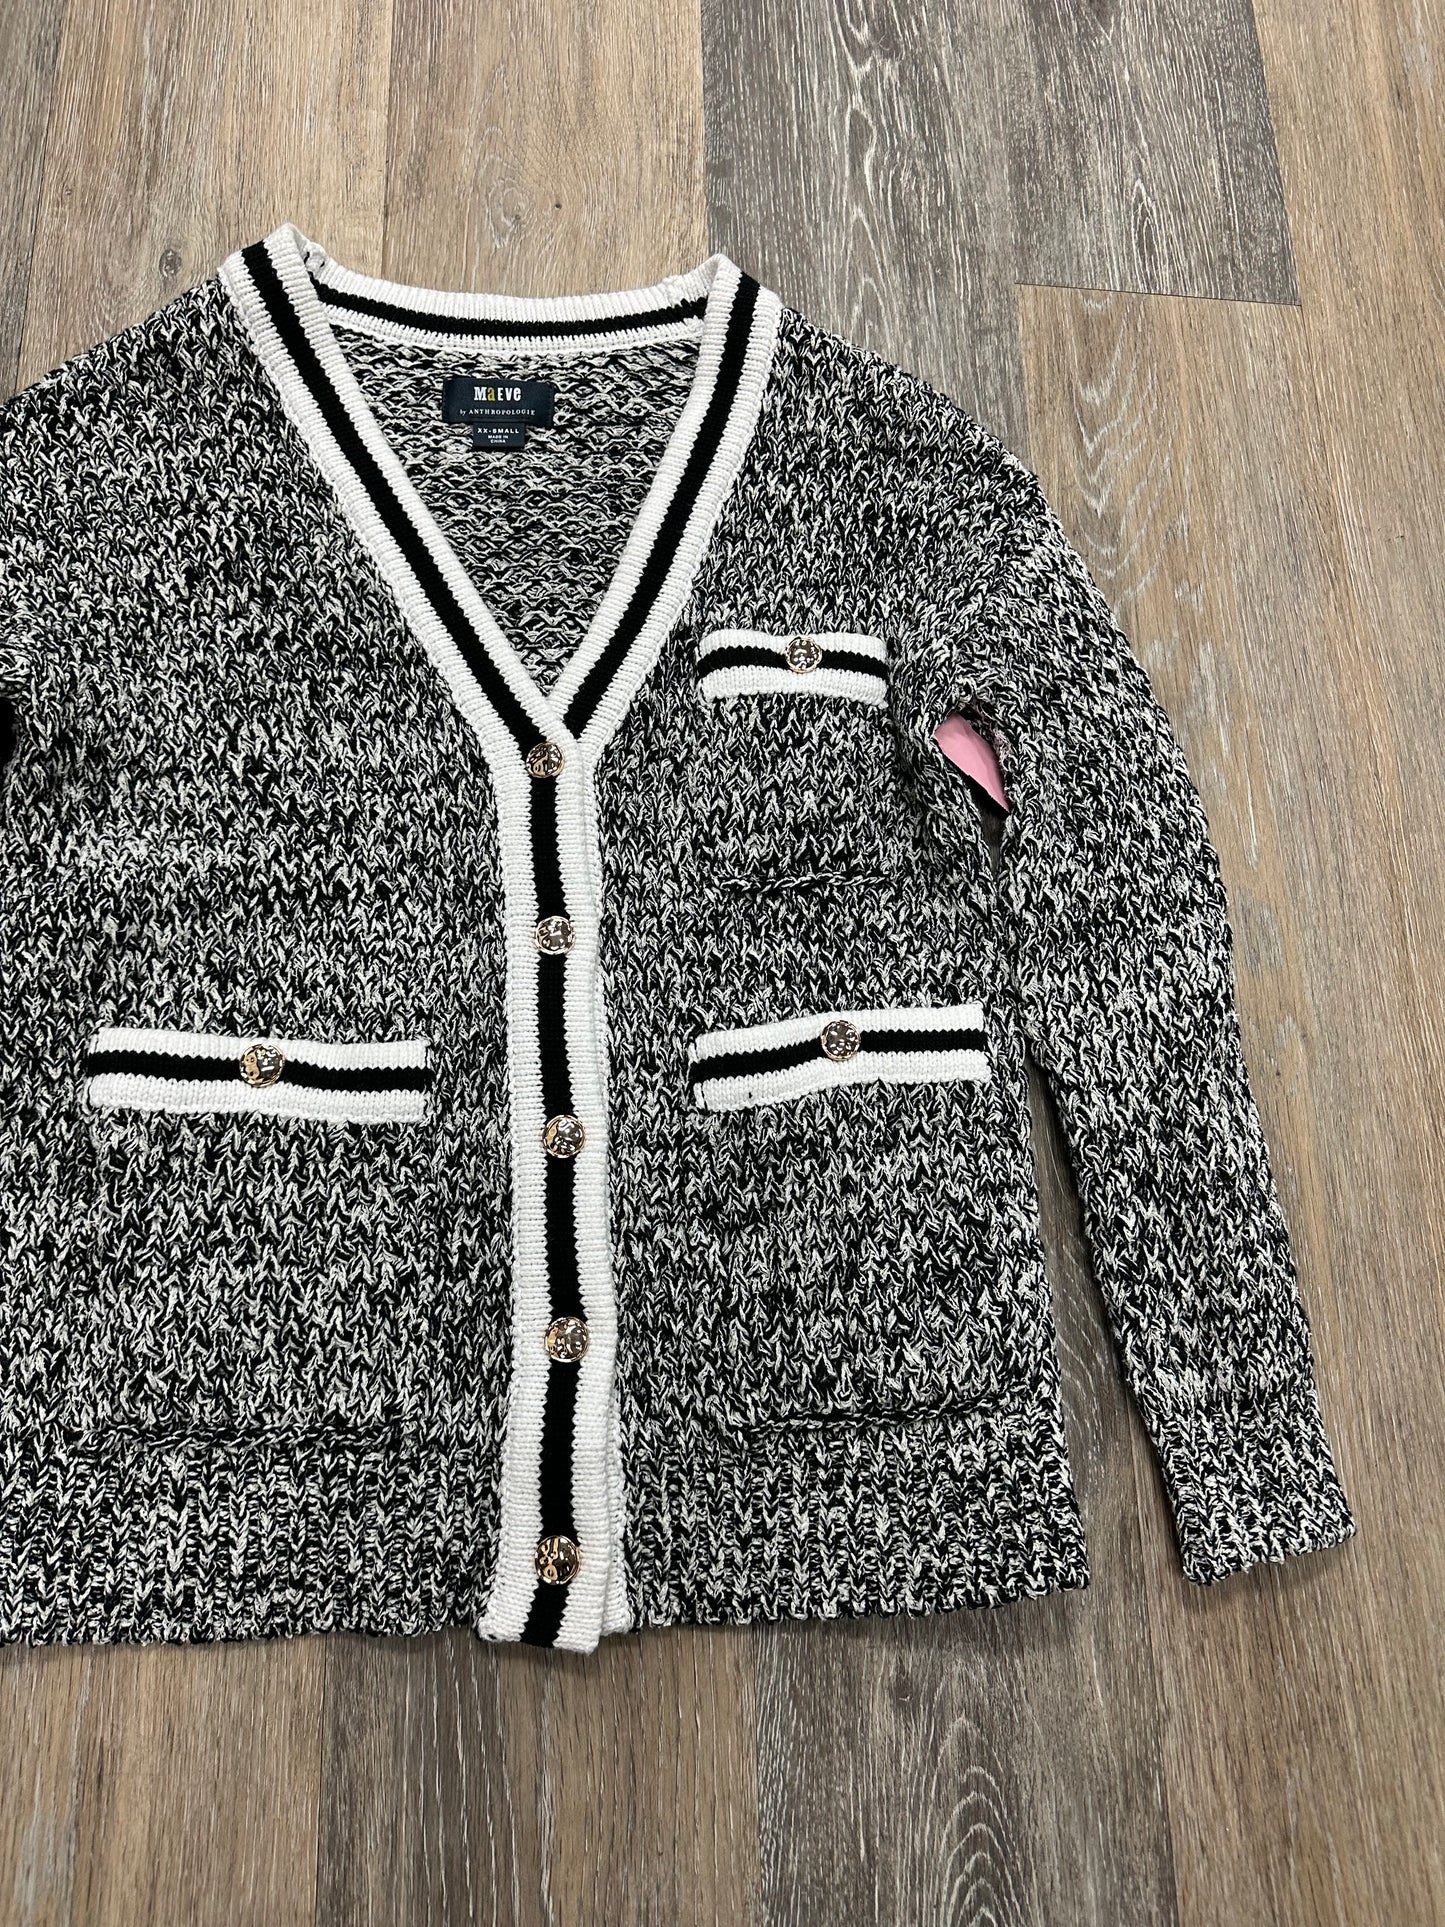 Sweater Cardigan By Maeve  Size: Xxs